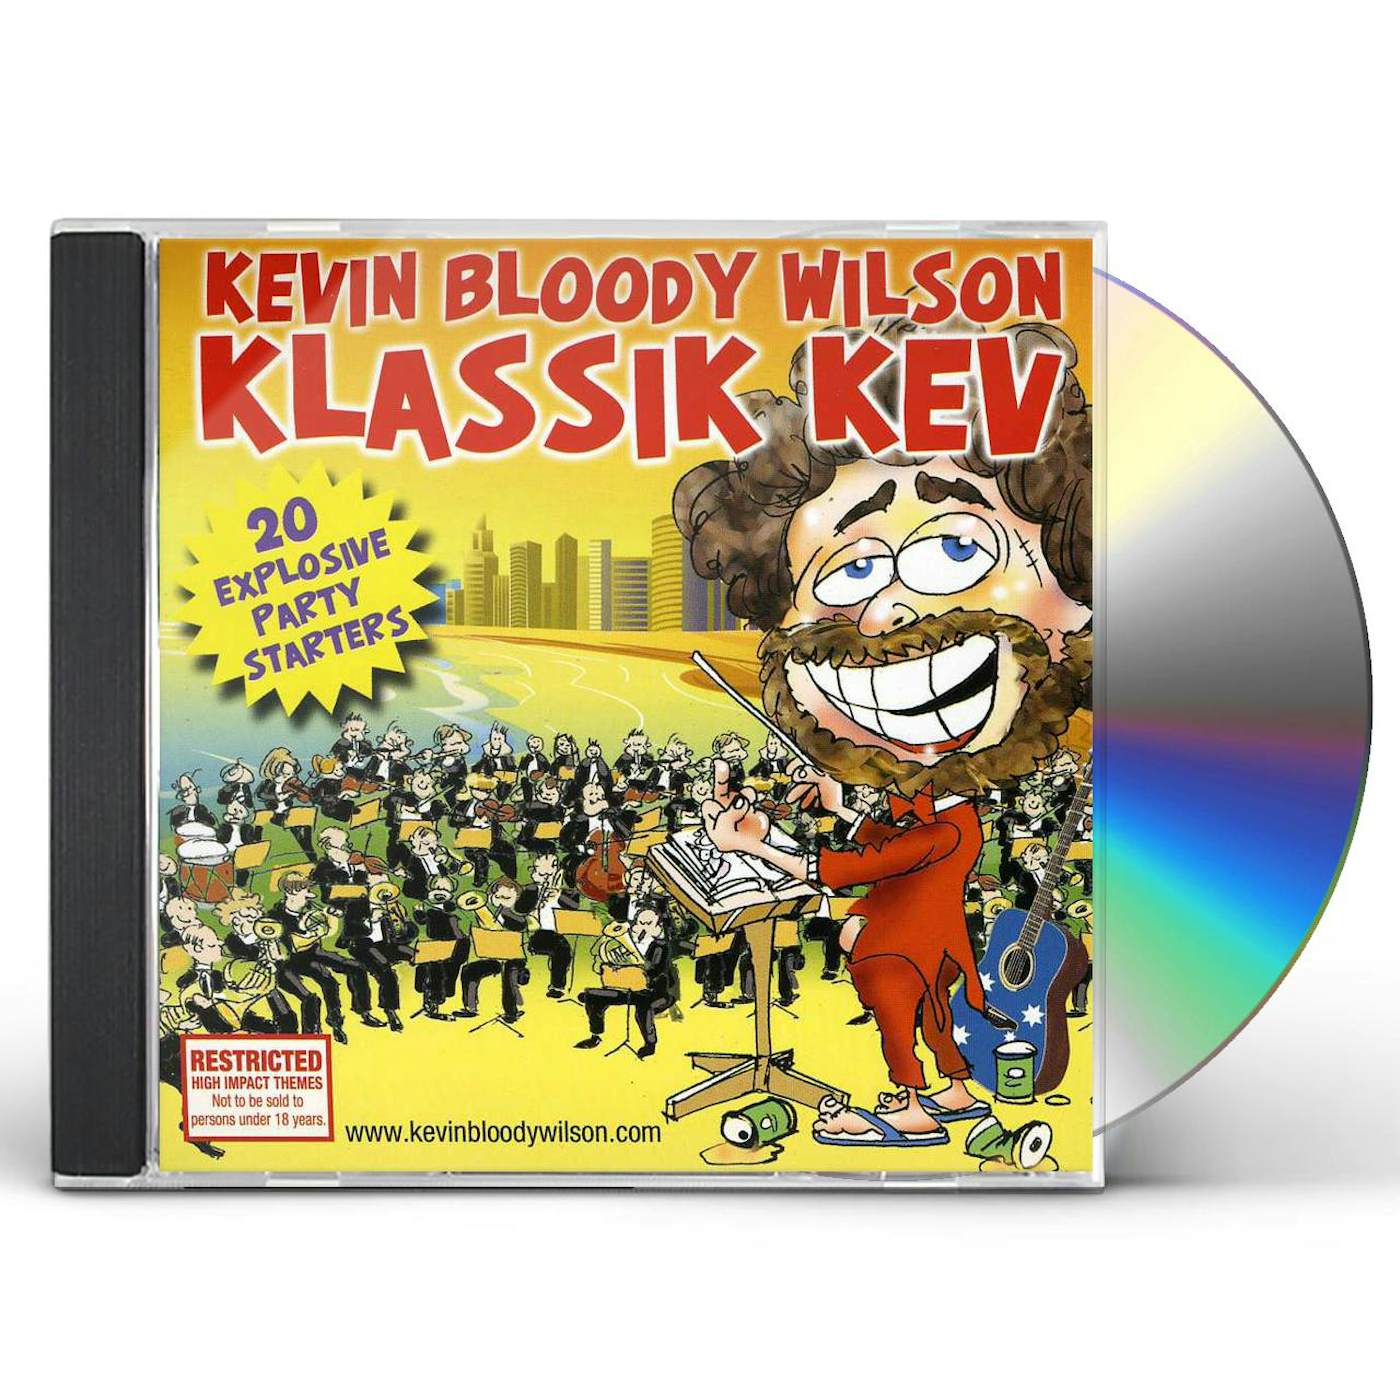 Kevin Bloody Wilson KLASSIC KEV CD